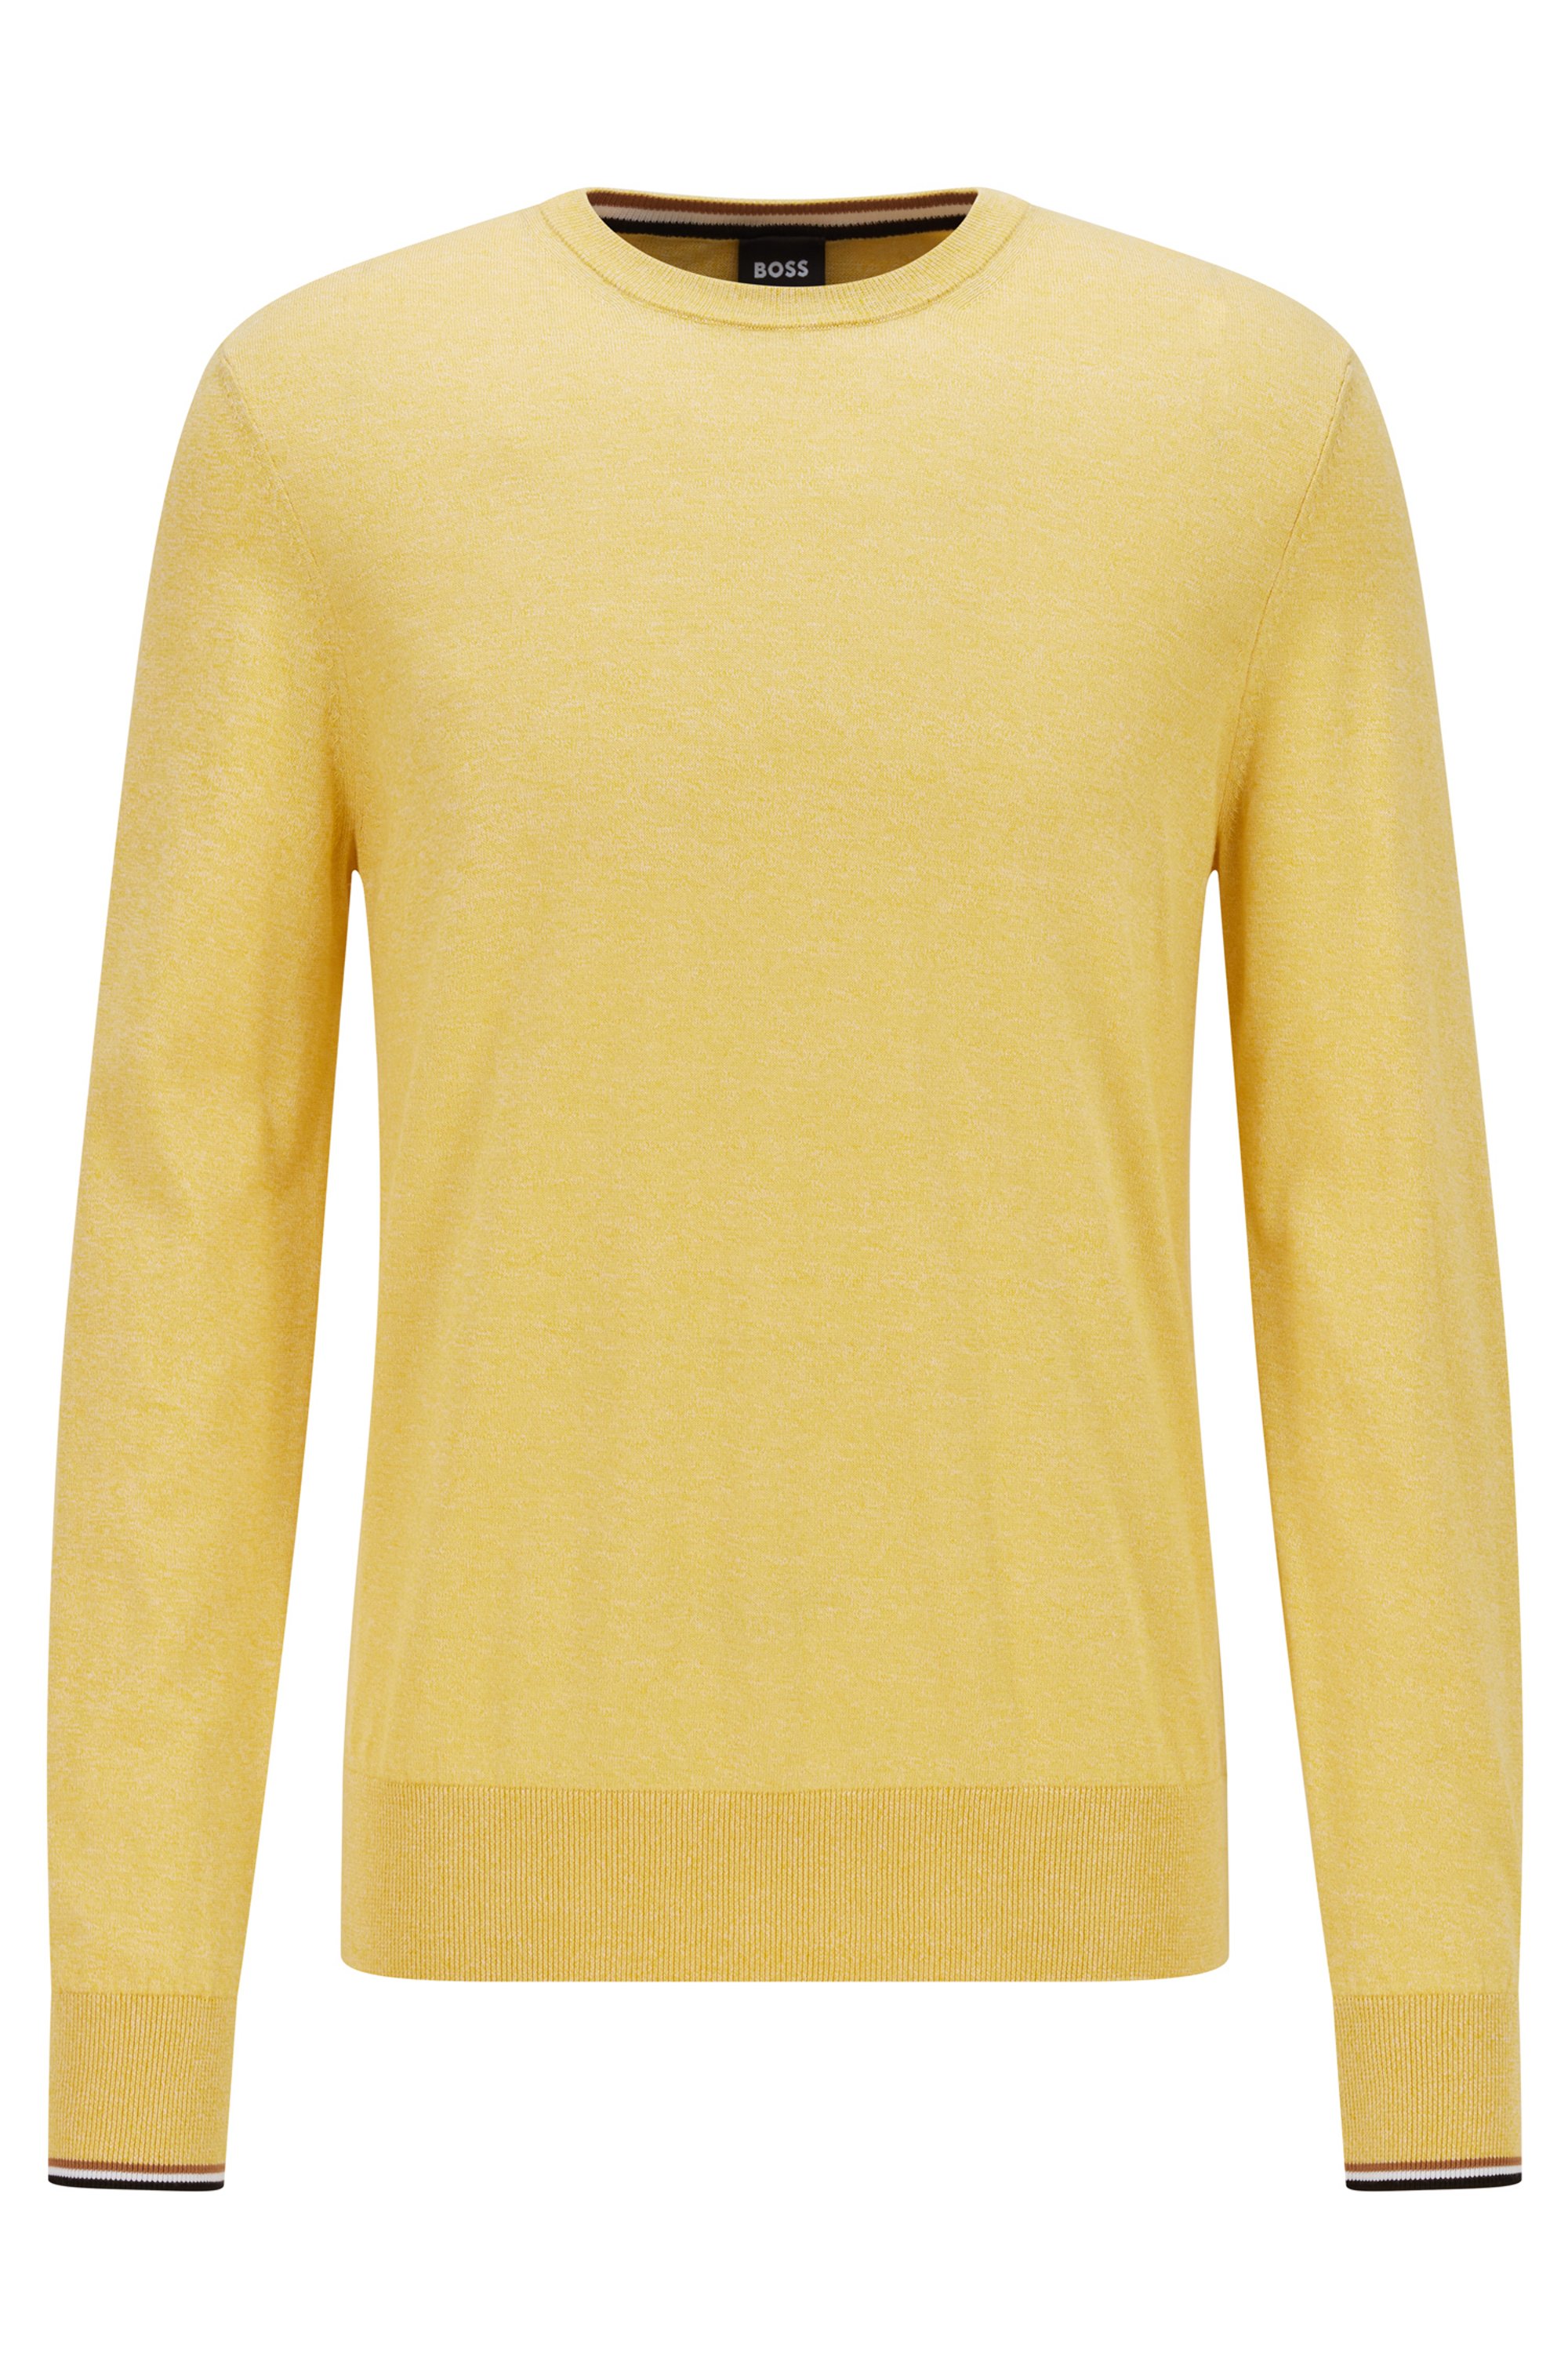 Jersey de algodón de punto fino con ribetes a rayas, Amarillo claro